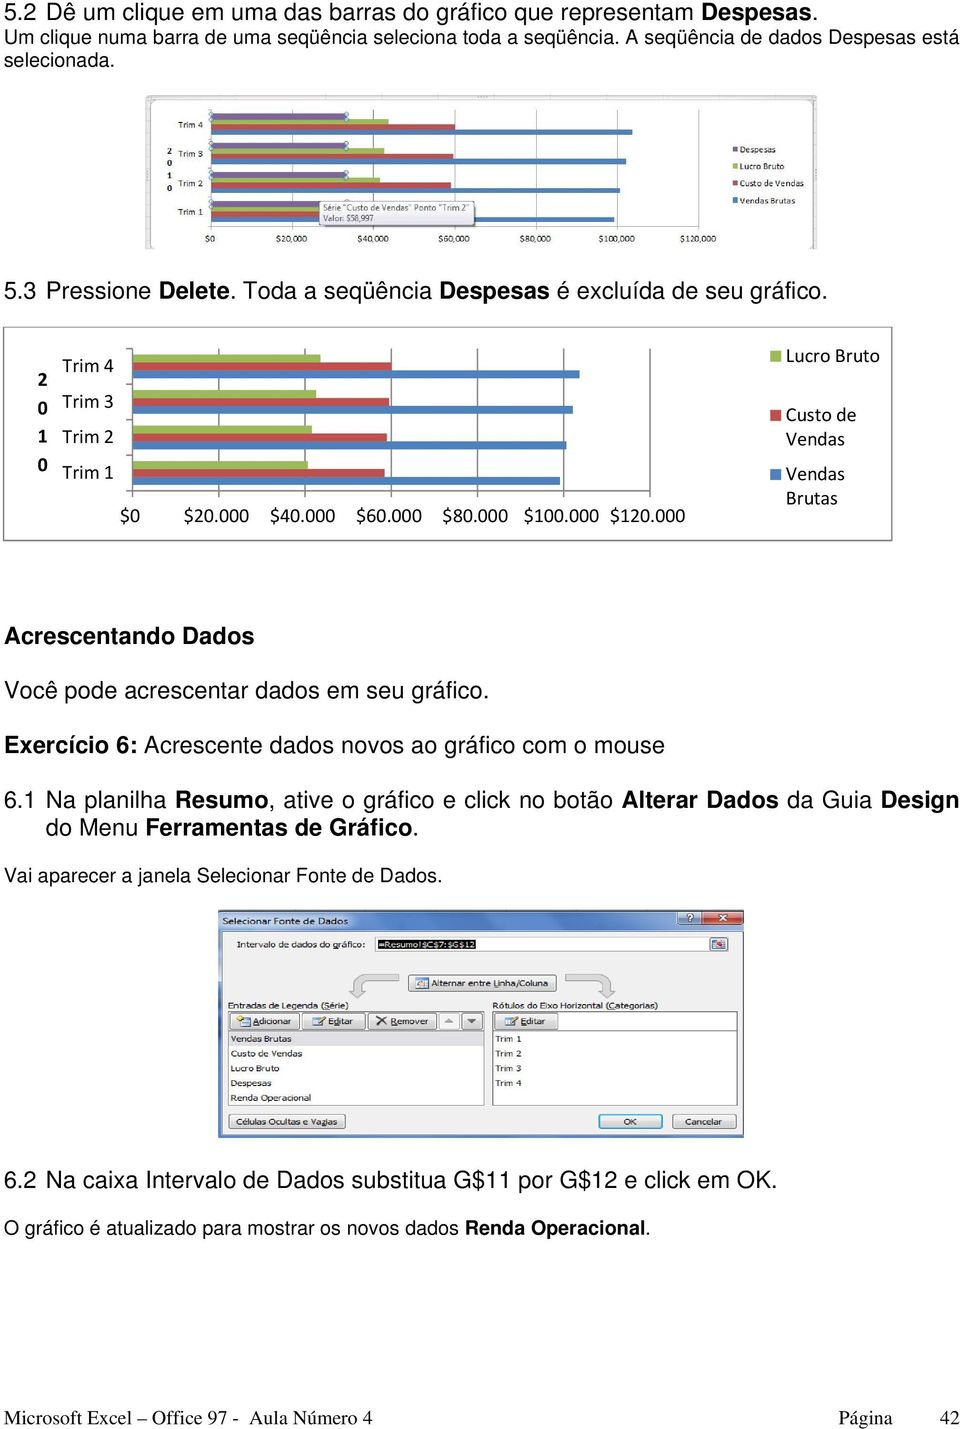 Exercício 6: Acrescente dados novos ao gráfico com o mouse 6.1 Na planilha Resumo, ative o gráfico e click no botão Alterar Dados da Guia Design do Menu Ferramentas de Gráfico.